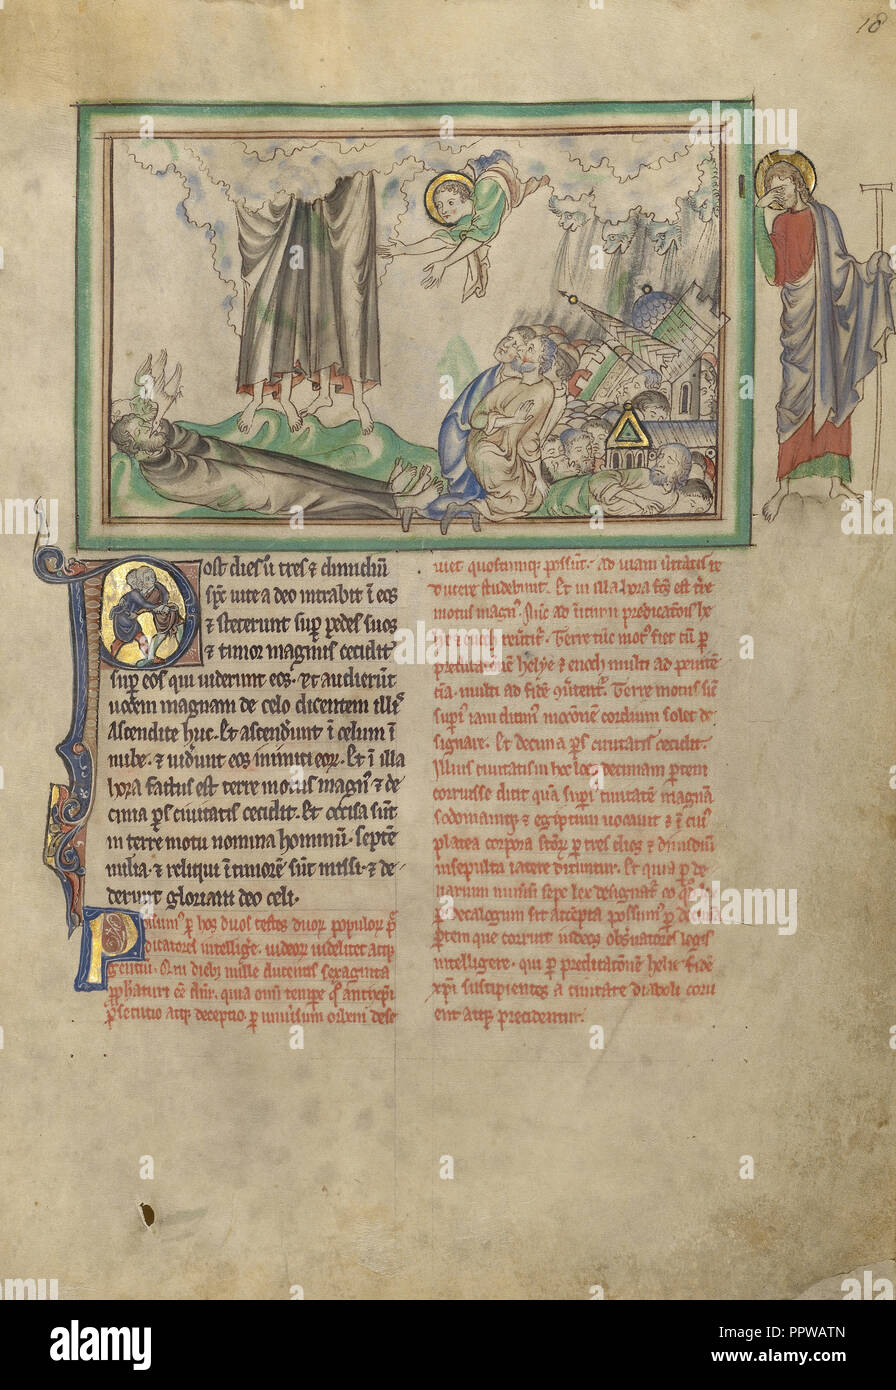 Il distacco dei due testimoni e la distruzione della città; Londra, probabilmente, Inghilterra; circa 1255 - 1260; colori a tempera Foto Stock